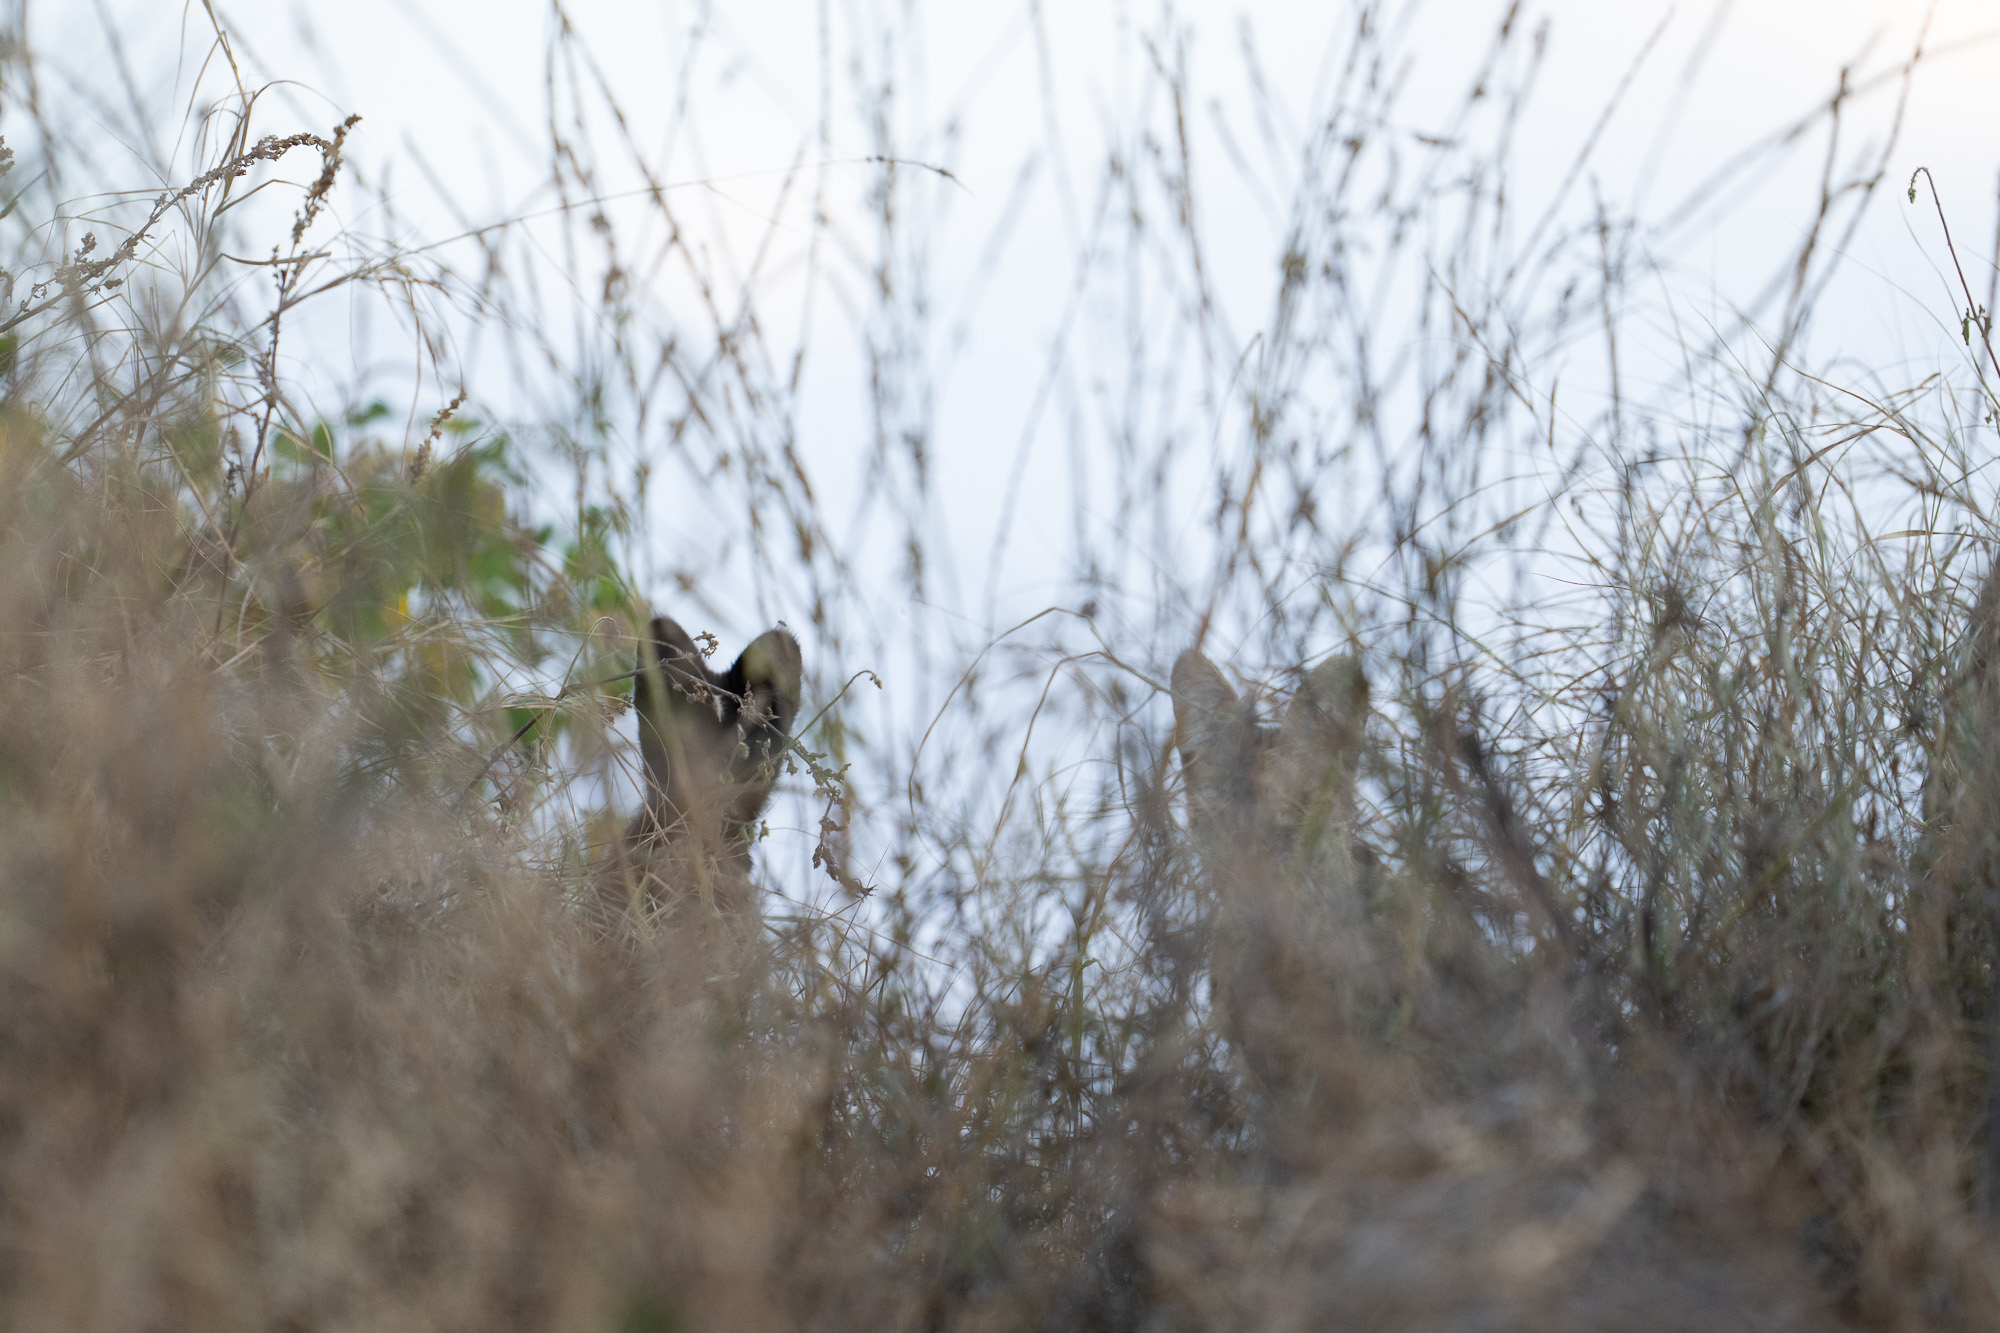 Melanistic Serval Kitten in the Serengeti